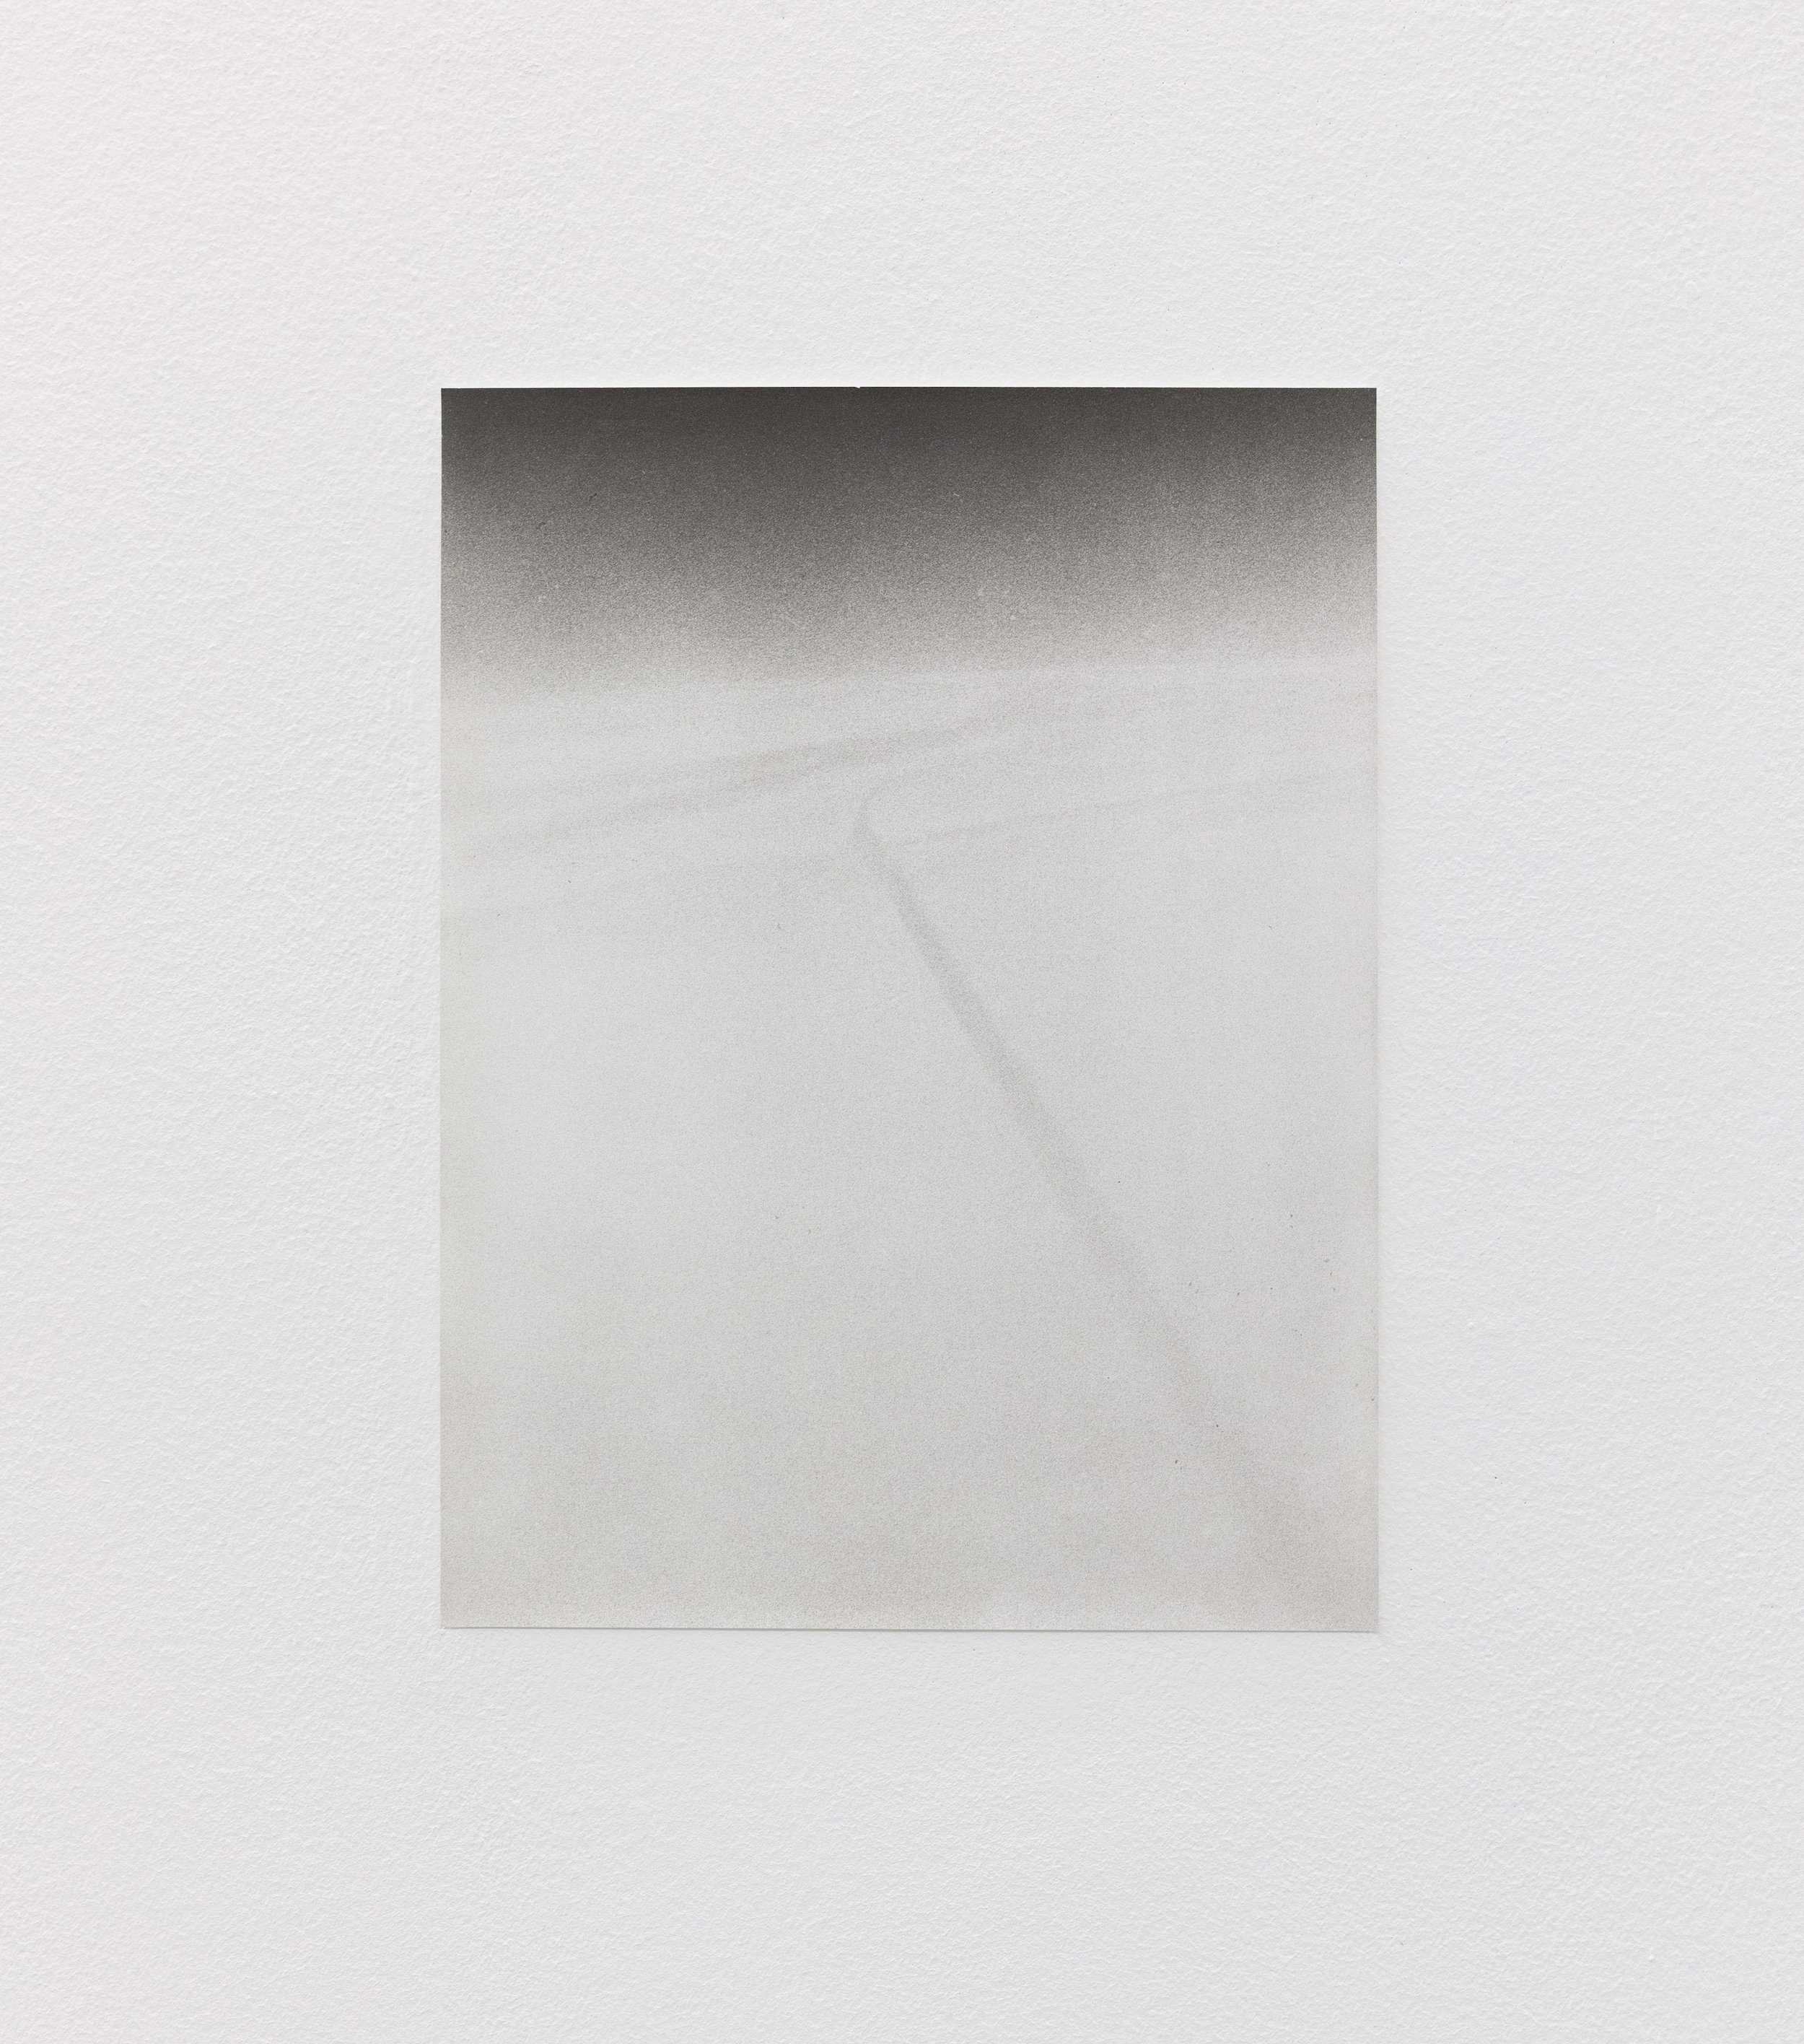  Airtraffic, 2019, silver gelatin print, 48.5 x 39.5 cm, edition 5/5 